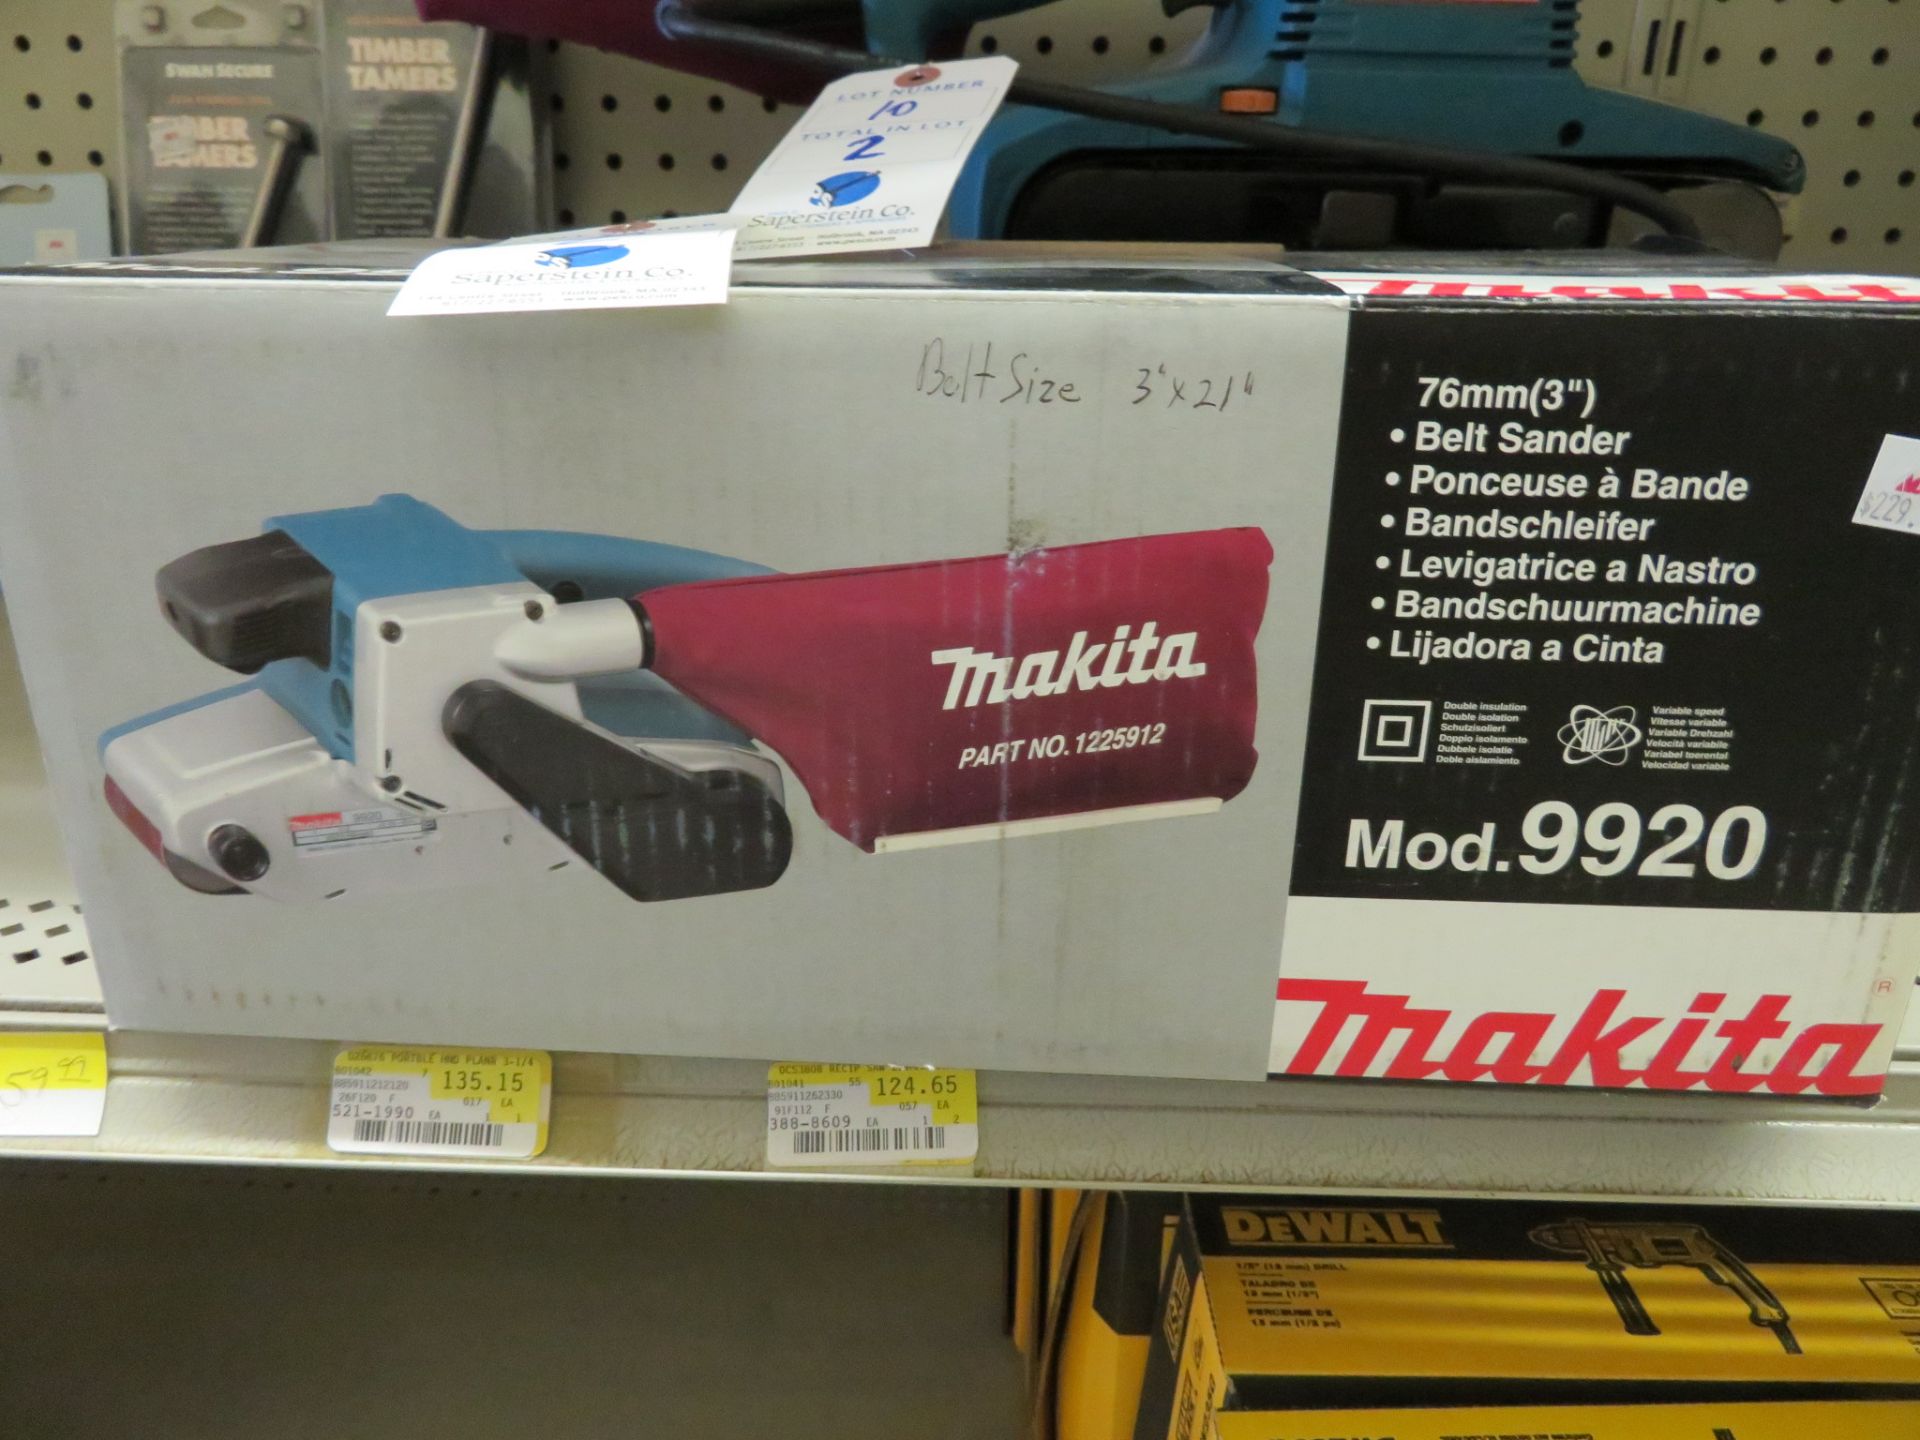 (2) Makita #9920 21" Belt Sander (1 NIB, 1 Floor Display) (Retail Price: $230 each)